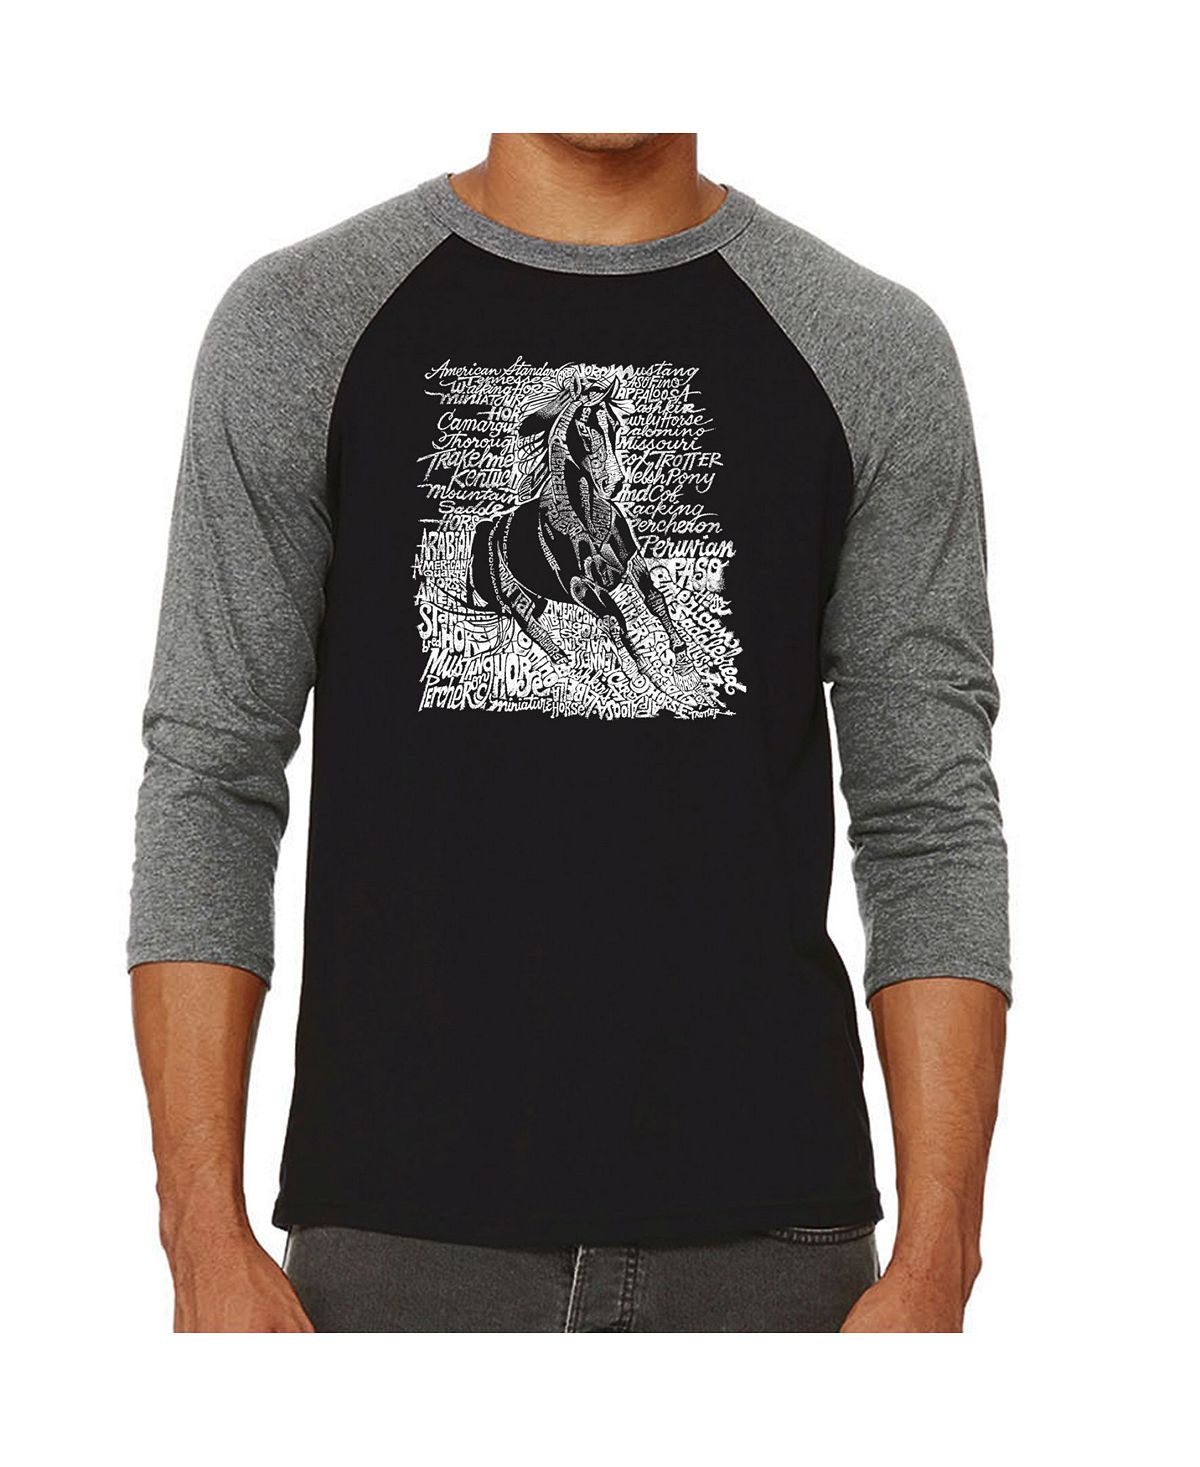 Популярные породы лошадей мужская футболка реглан word art LA Pop Art, серый